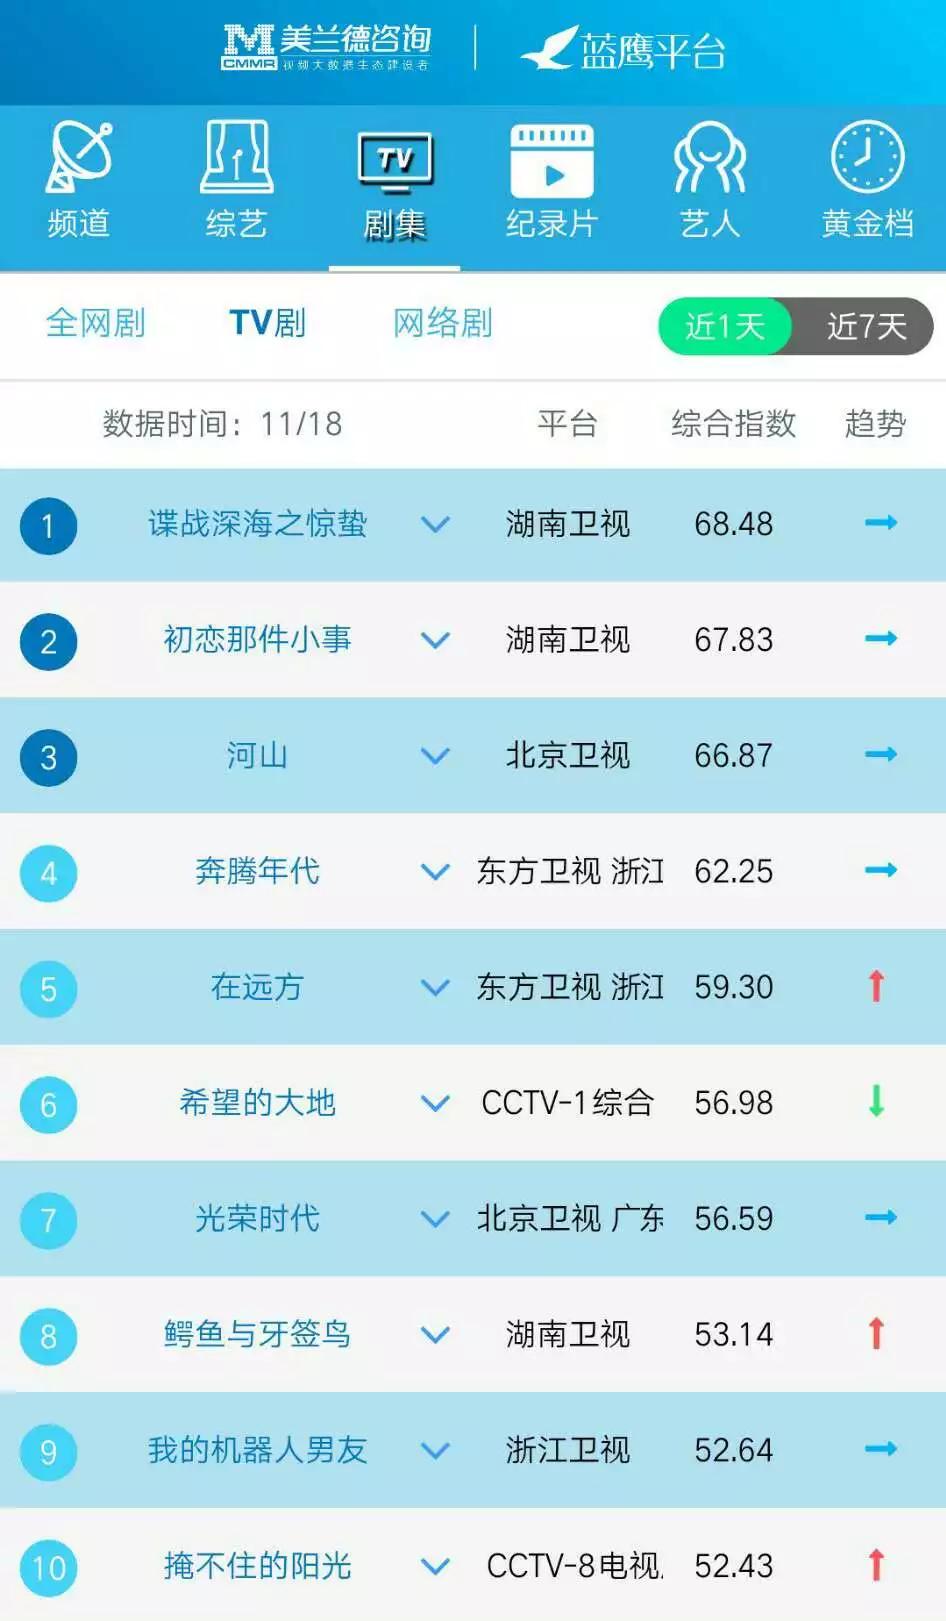 蓝鹰指数 11月18日影视内容 艺人融合传播影响力排行榜TOP10